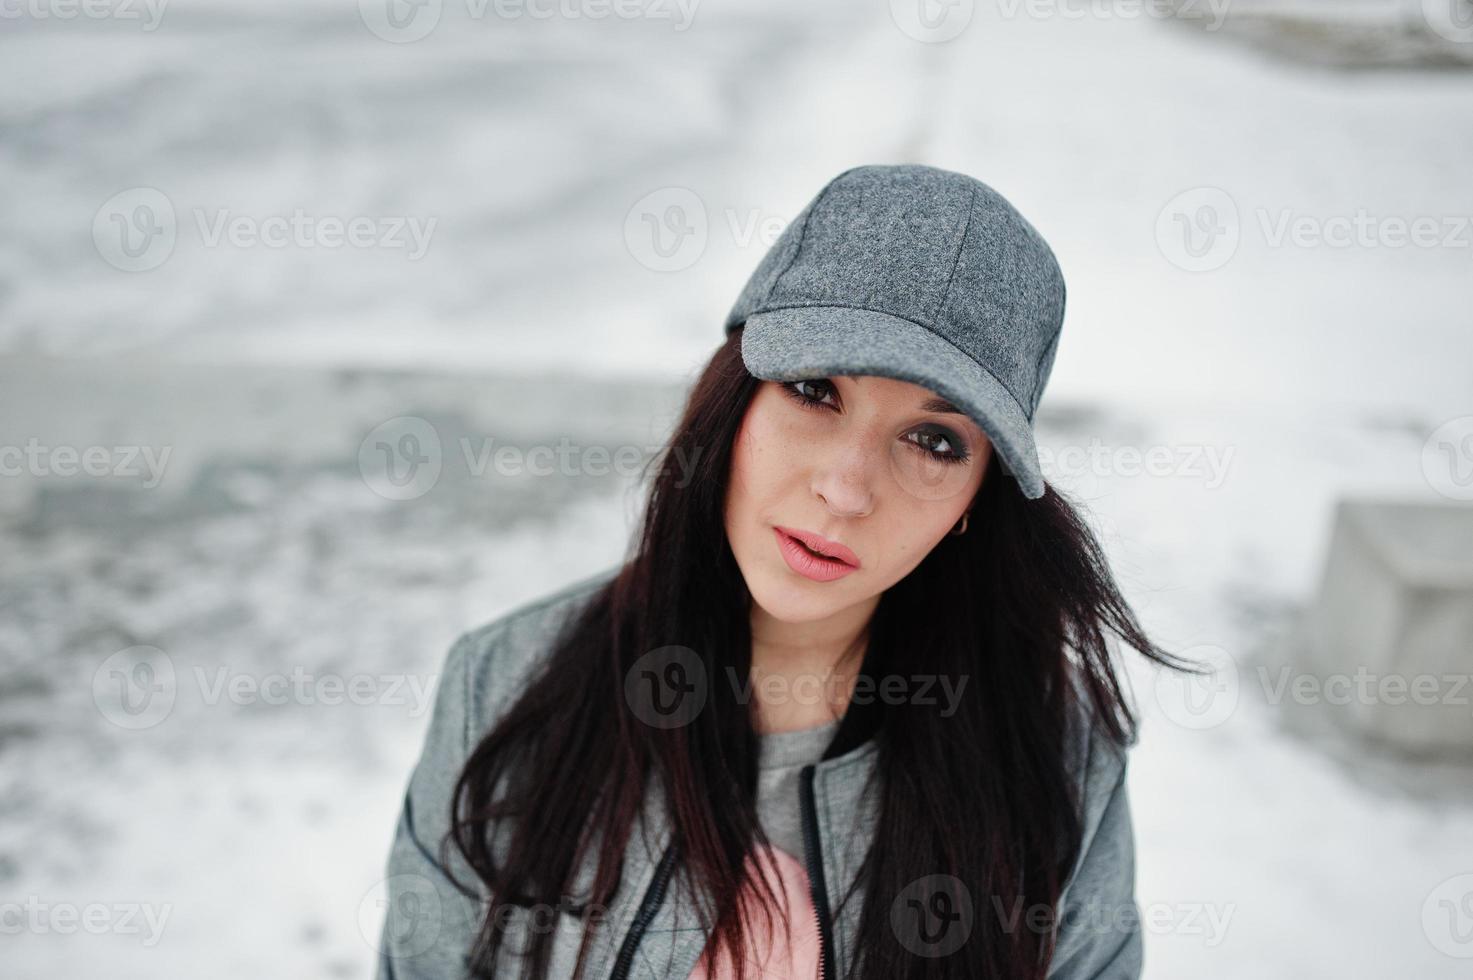 chica morena elegante con gorra gris, estilo casual de calle en el día de invierno. foto